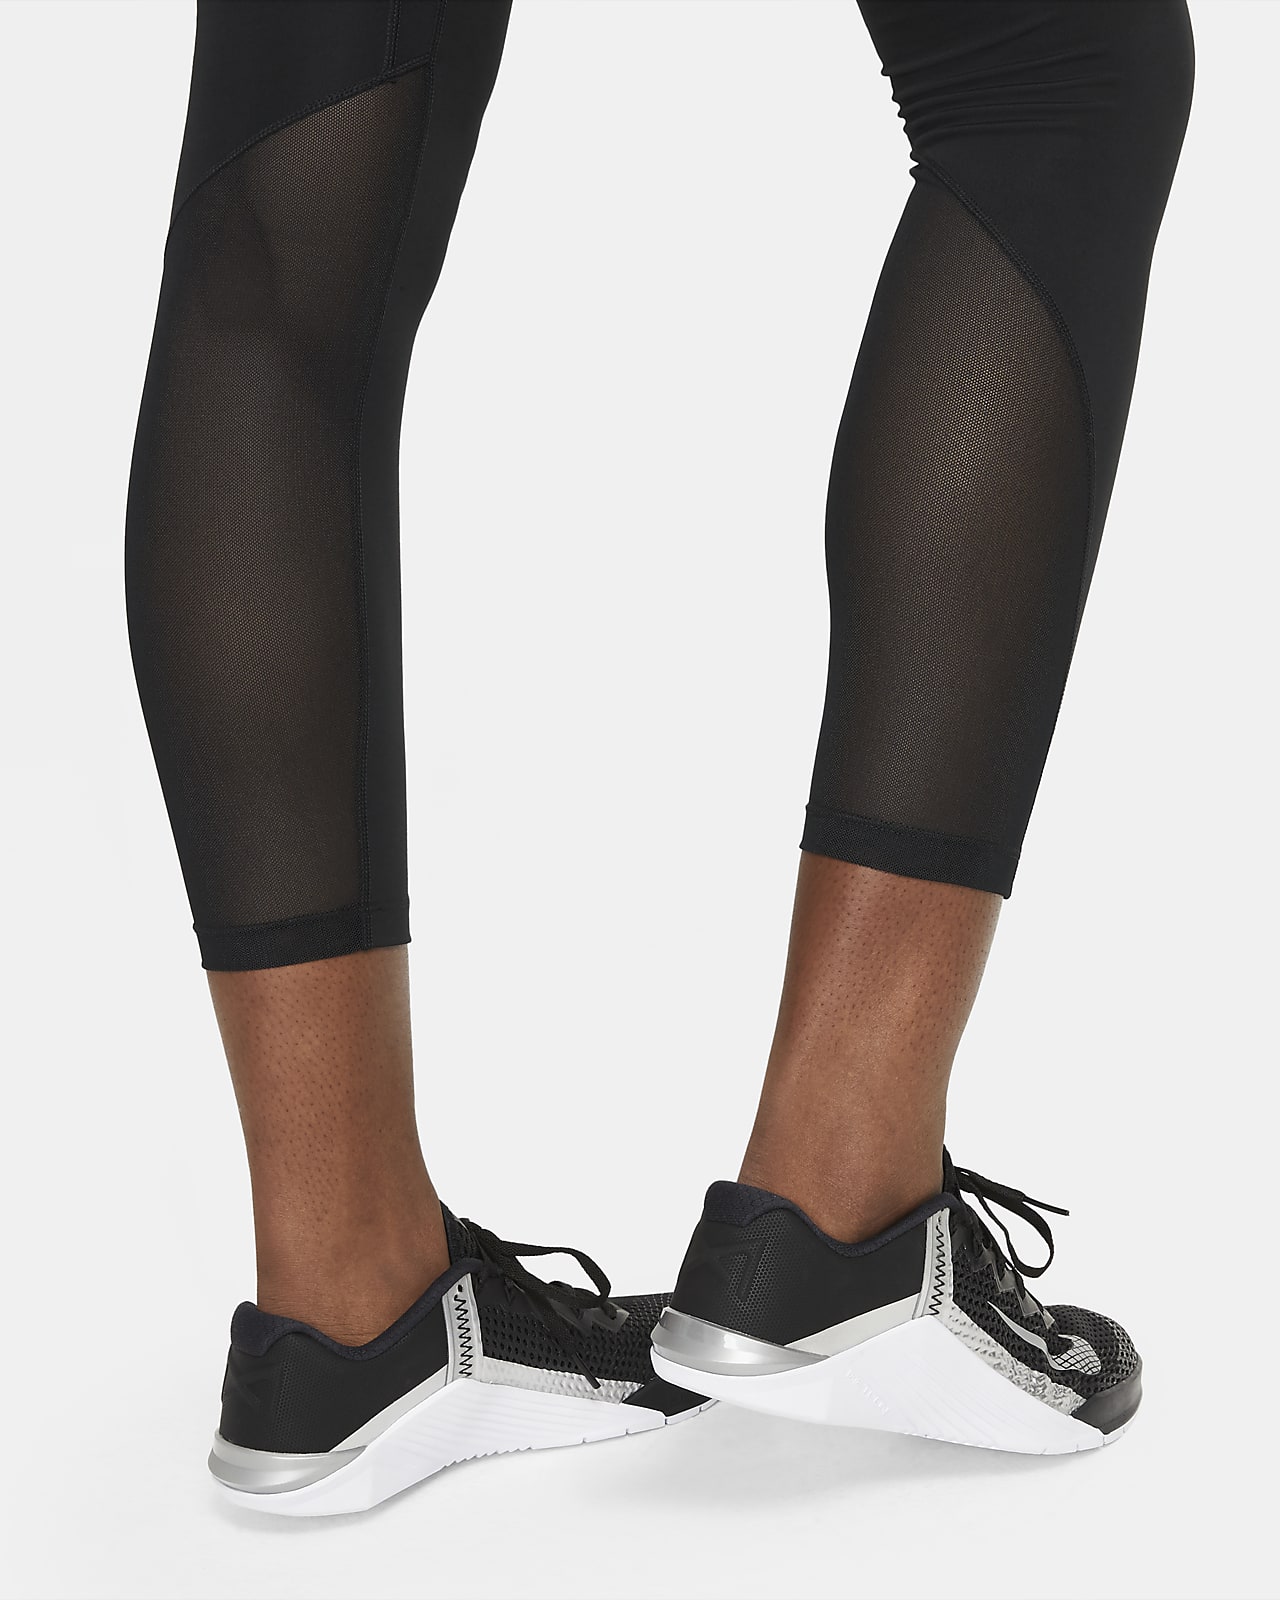 Leggings con paneles de malla de tiro alto de 7/8 para mujer Nike Pro 365